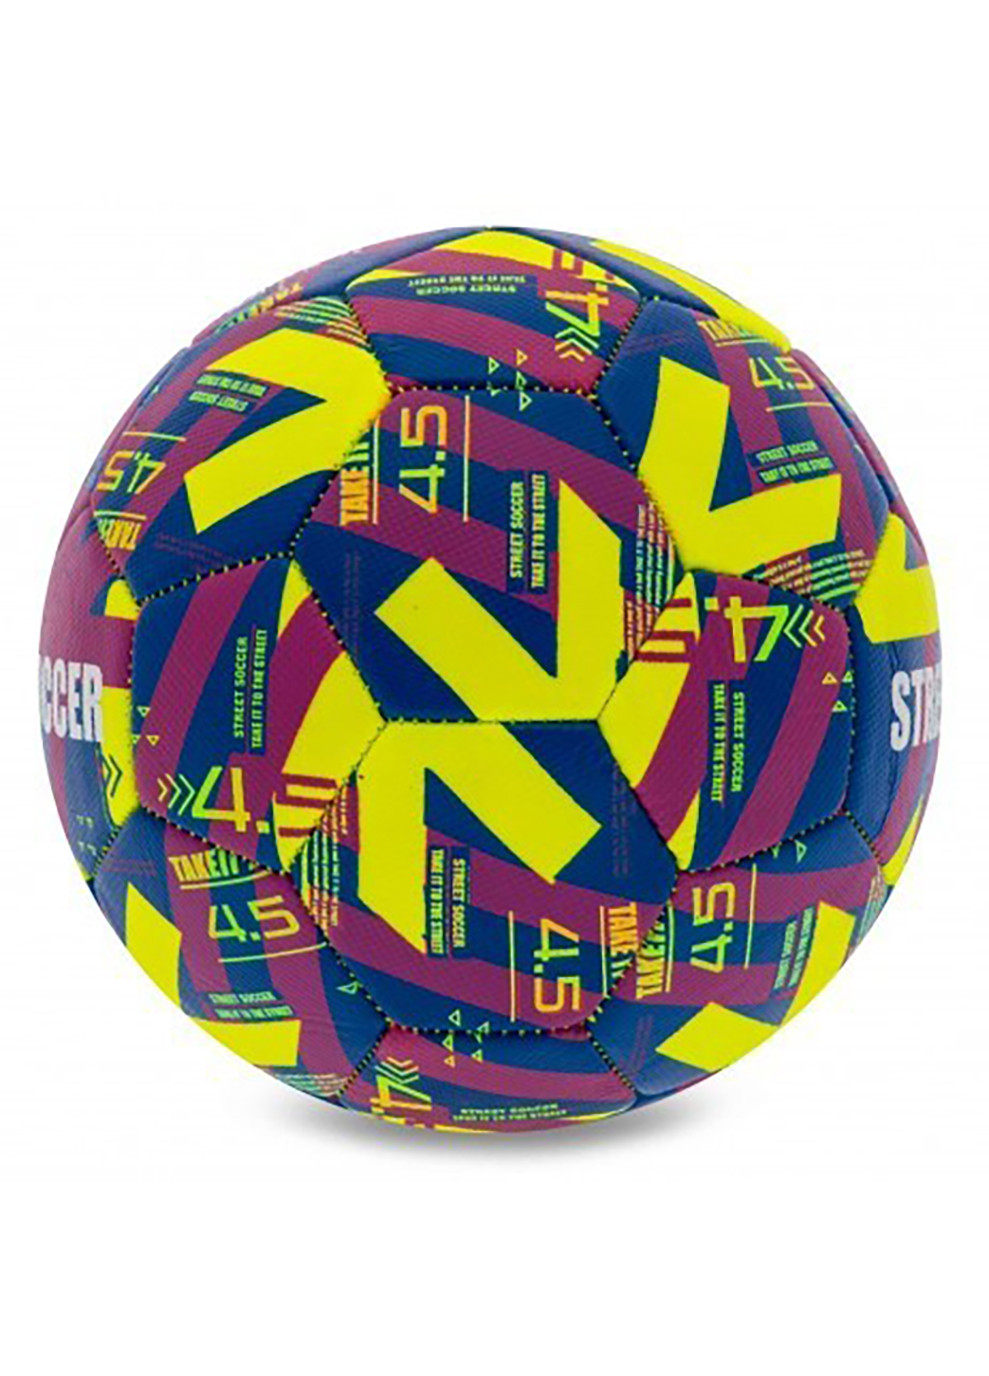 Мяч футбольный уличный STREET SOCCER v23 желтый Select (260634128)